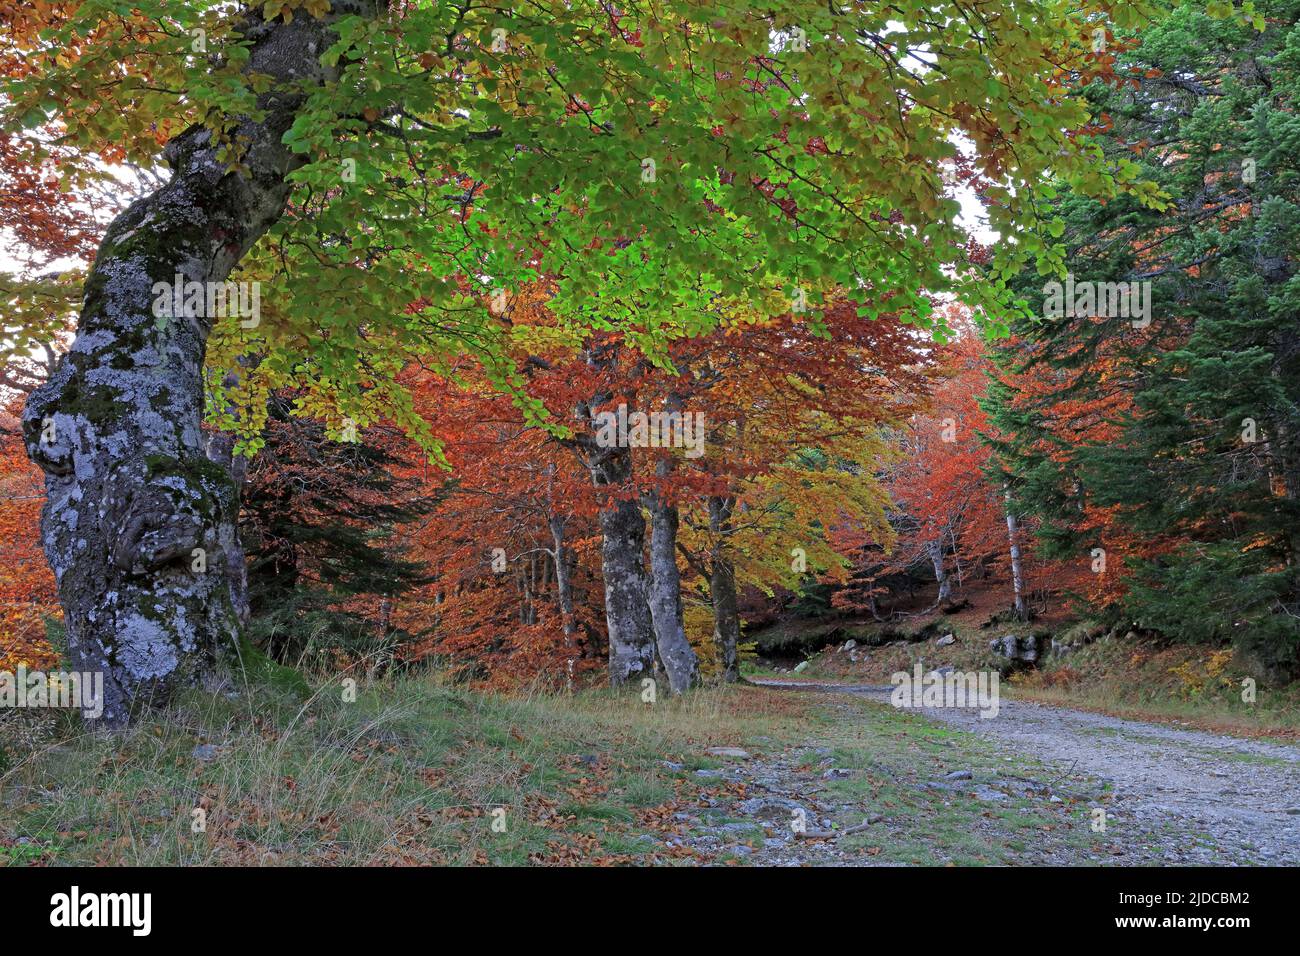 France, Lozère, Mont Lozère, classé site du patrimoine mondial de l'UNESCO, forêt, bosquet de hêtre en automne Banque D'Images